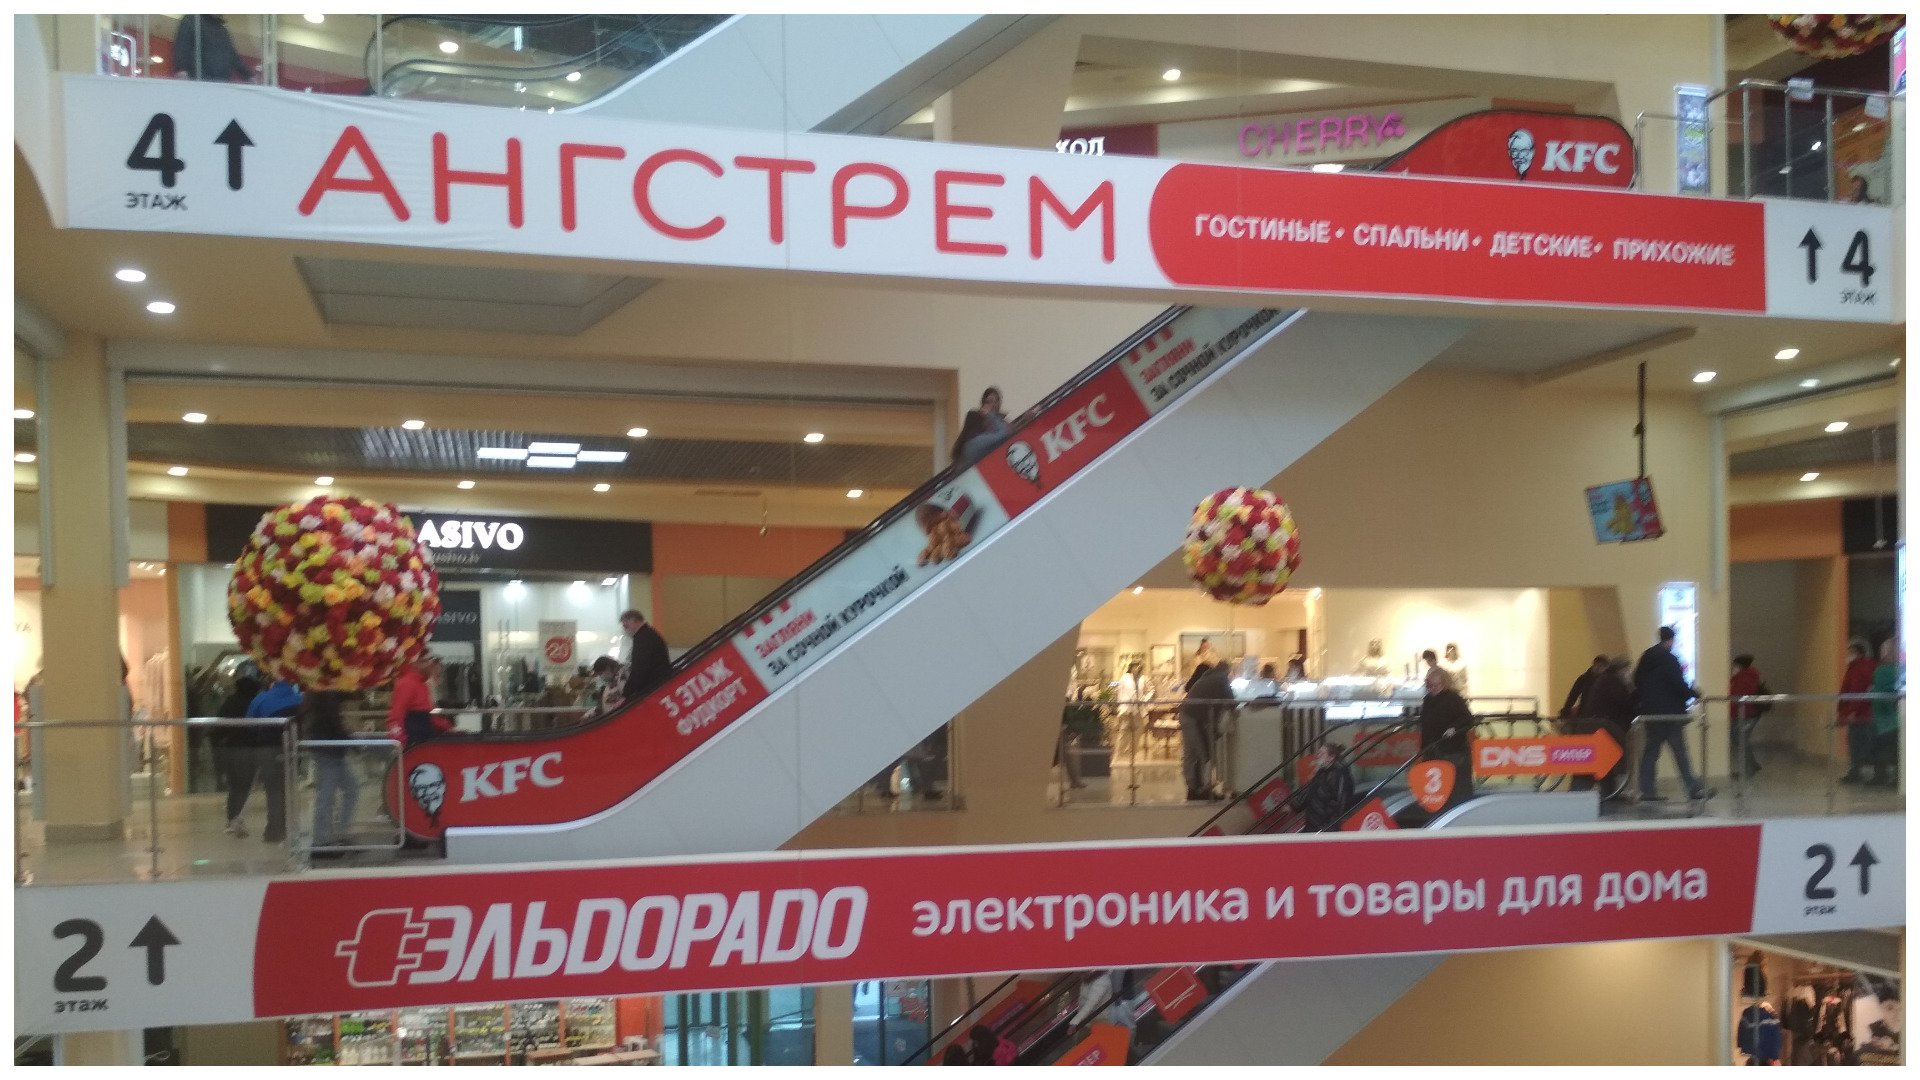 Торговый центр "Тополь" где находятся магазины, рестораны, современный супермаркет.